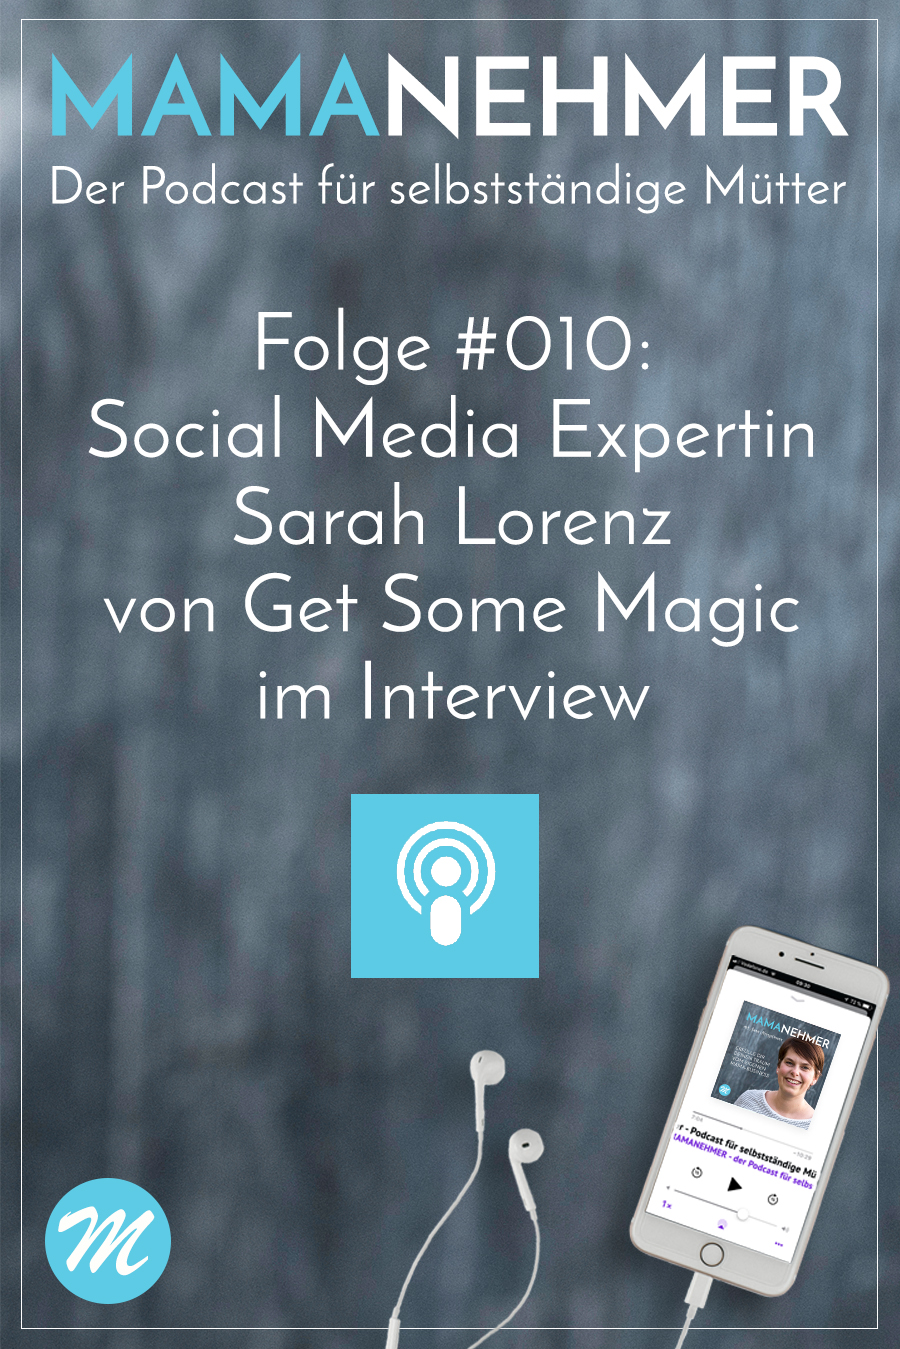 Selbstständige Mama als Social Media Coach - Im Interview Sarah Lorenz #Mamanehmer #MompreneurDE #SelbstständigeMama